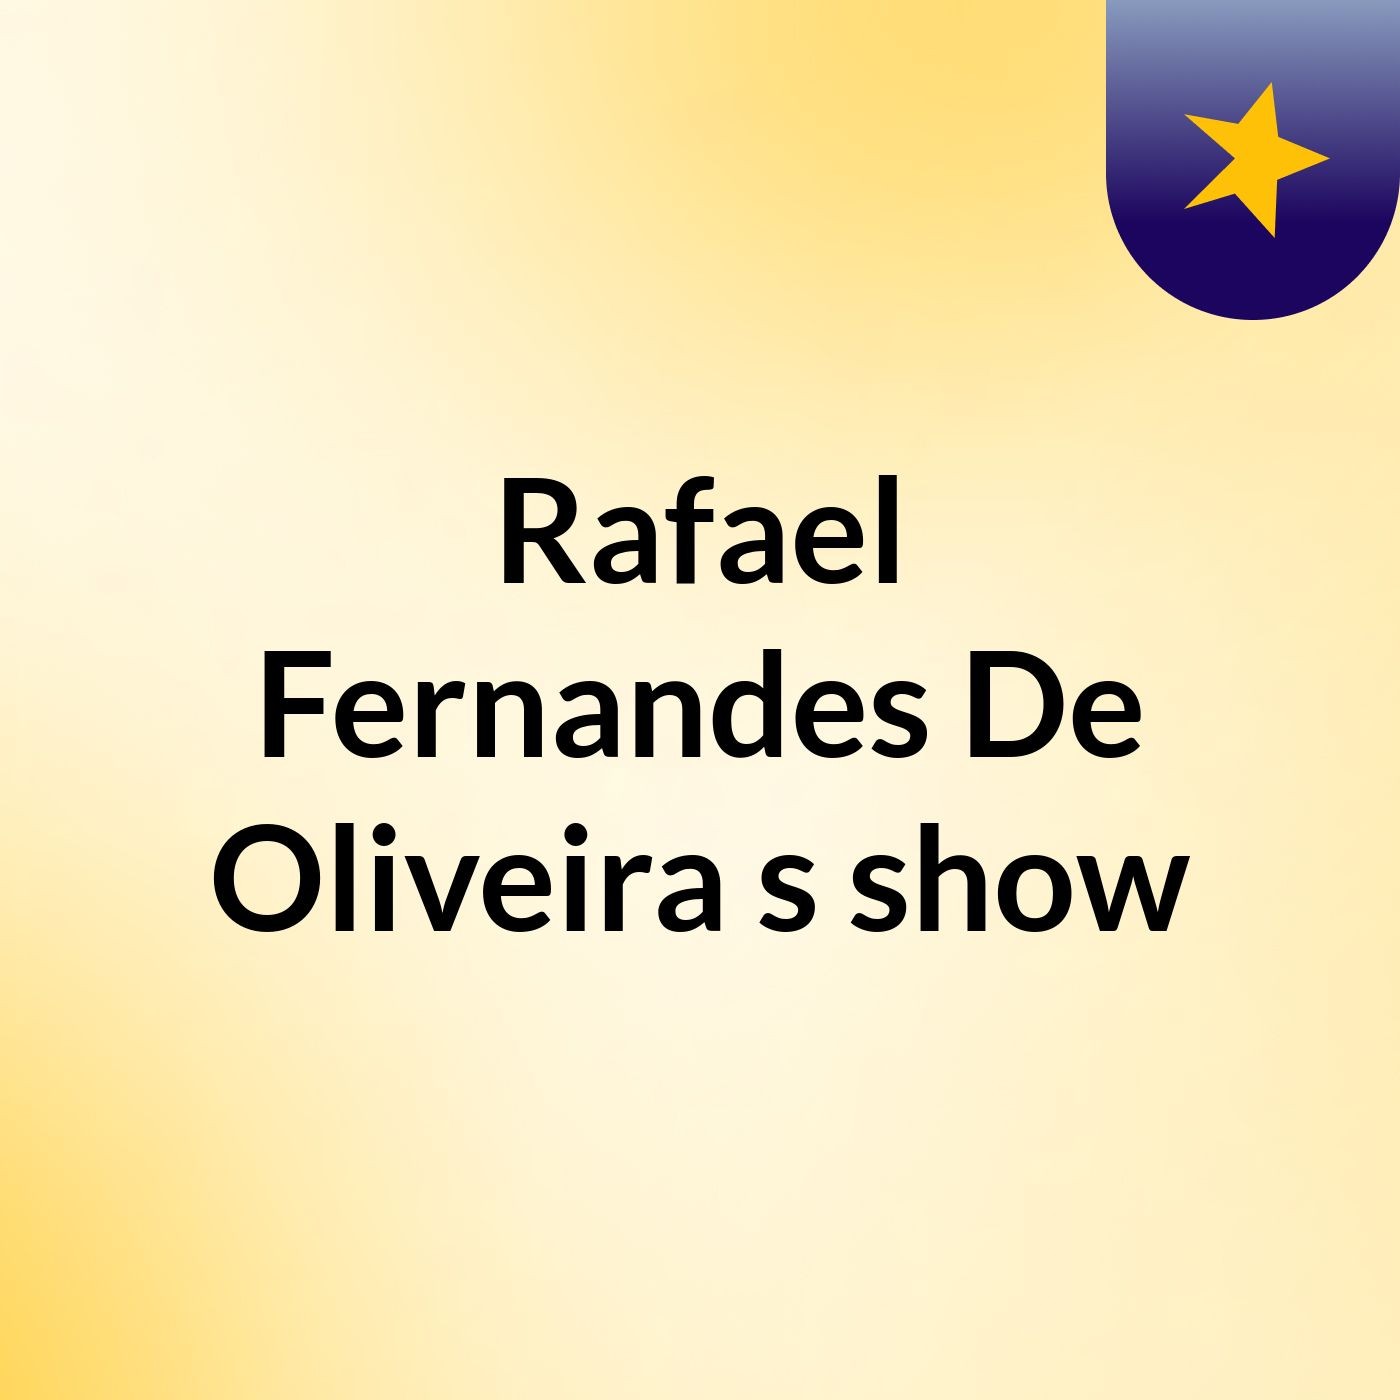 Rafael Fernandes De Oliveira's show